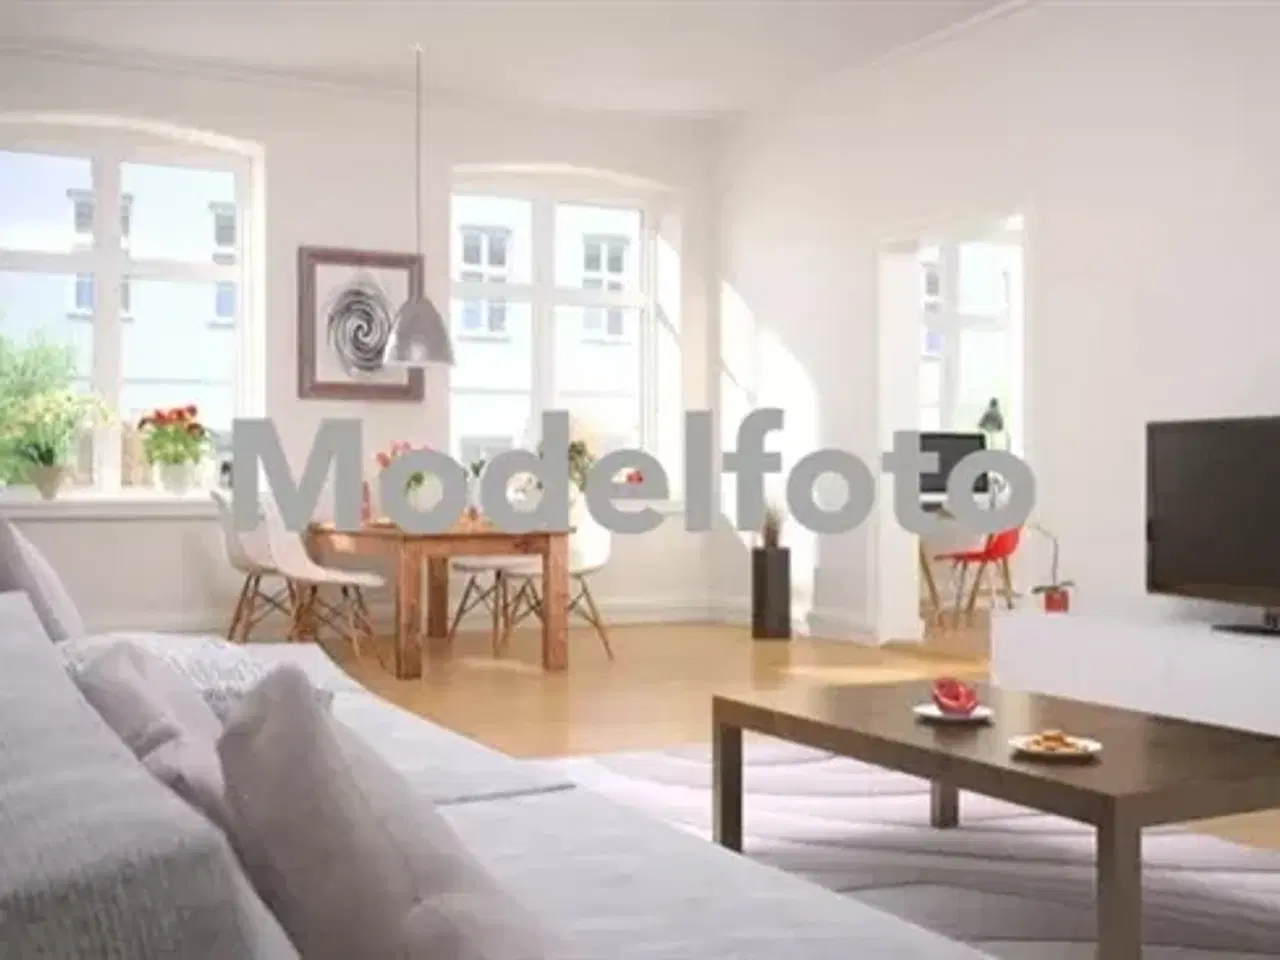 Billede 1 - Lejlighed til leje i 2400 København NV